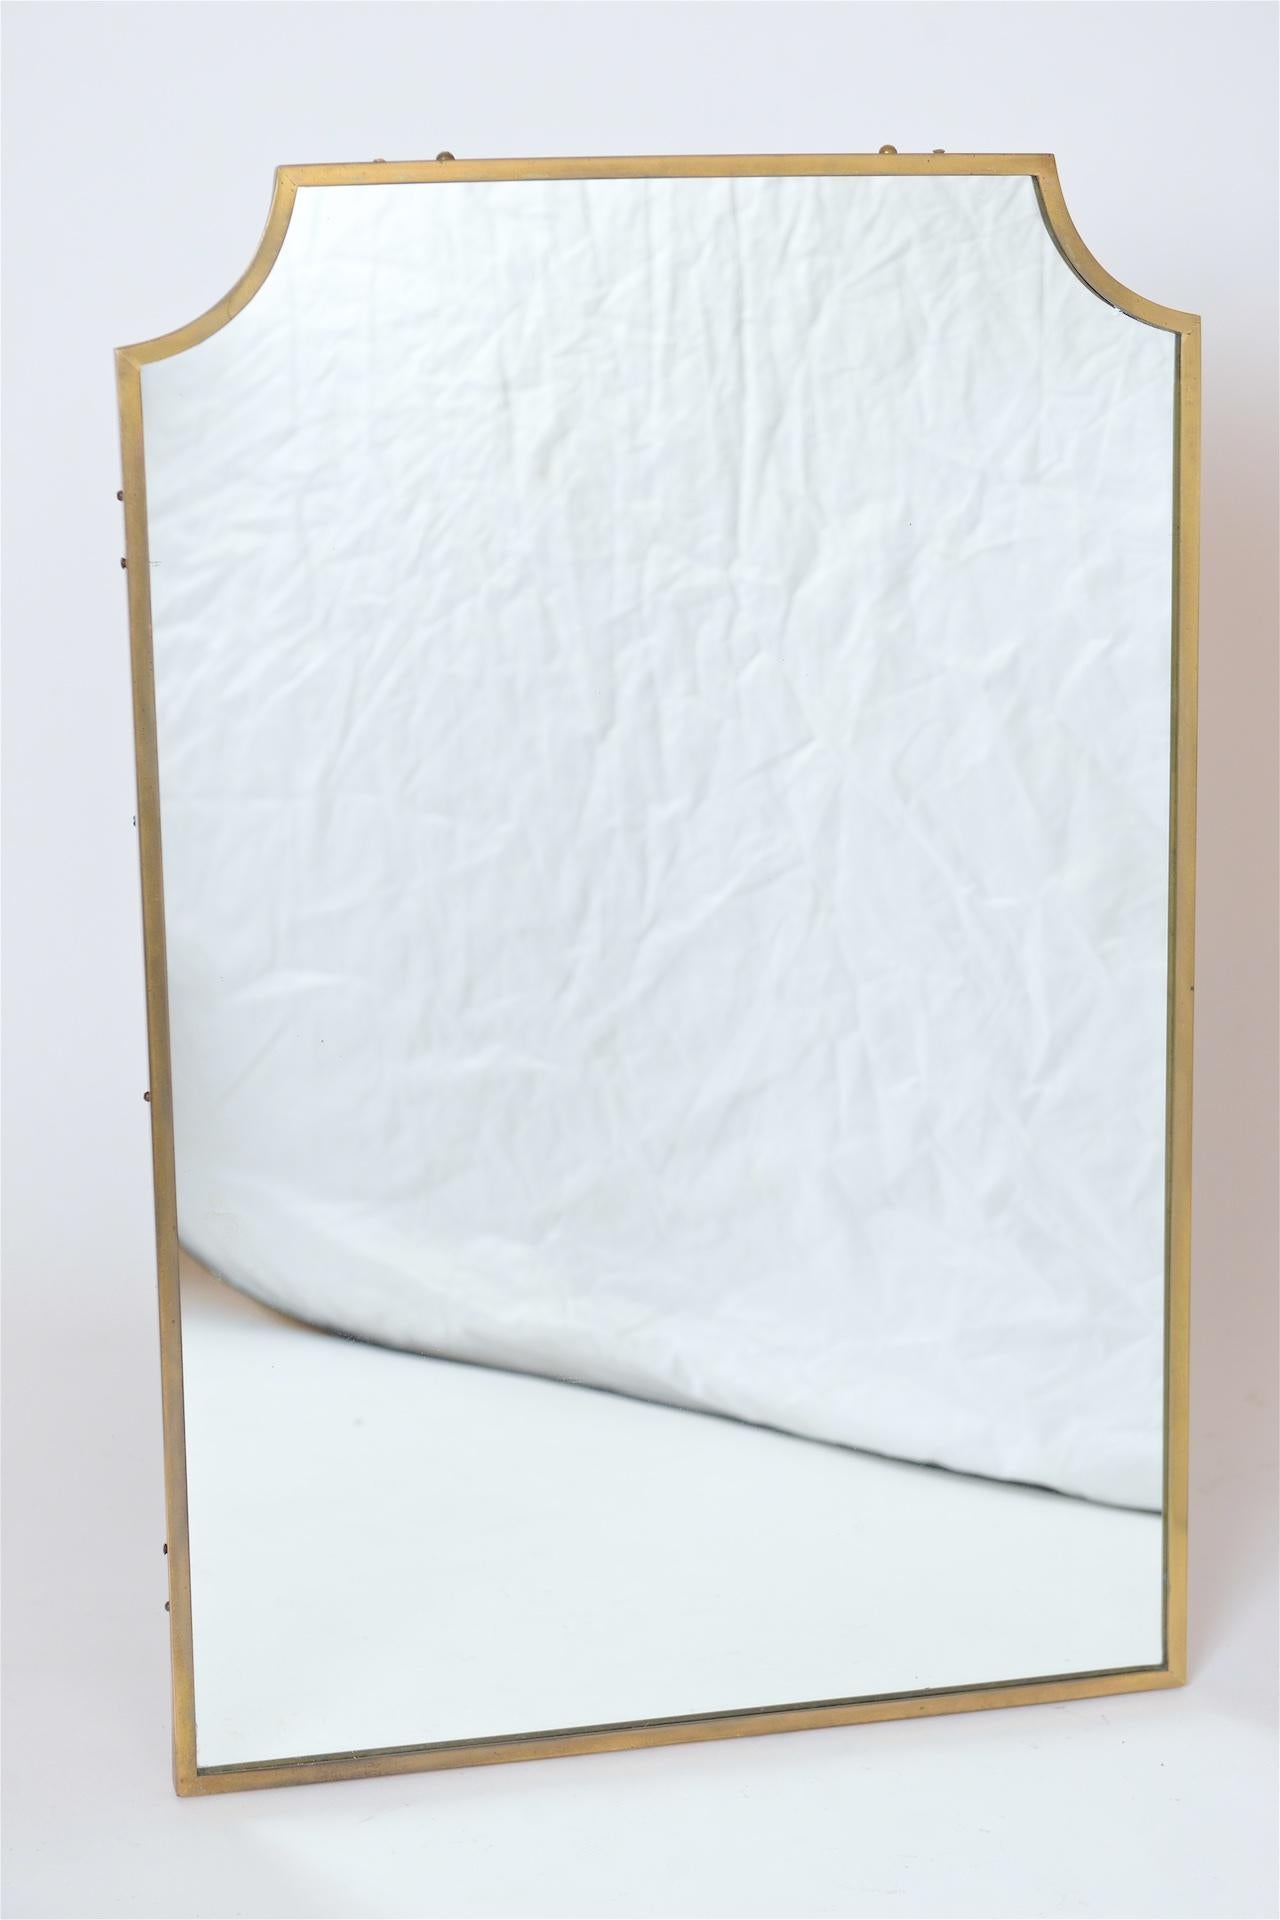 1950s Italian brass framed wall mirror.